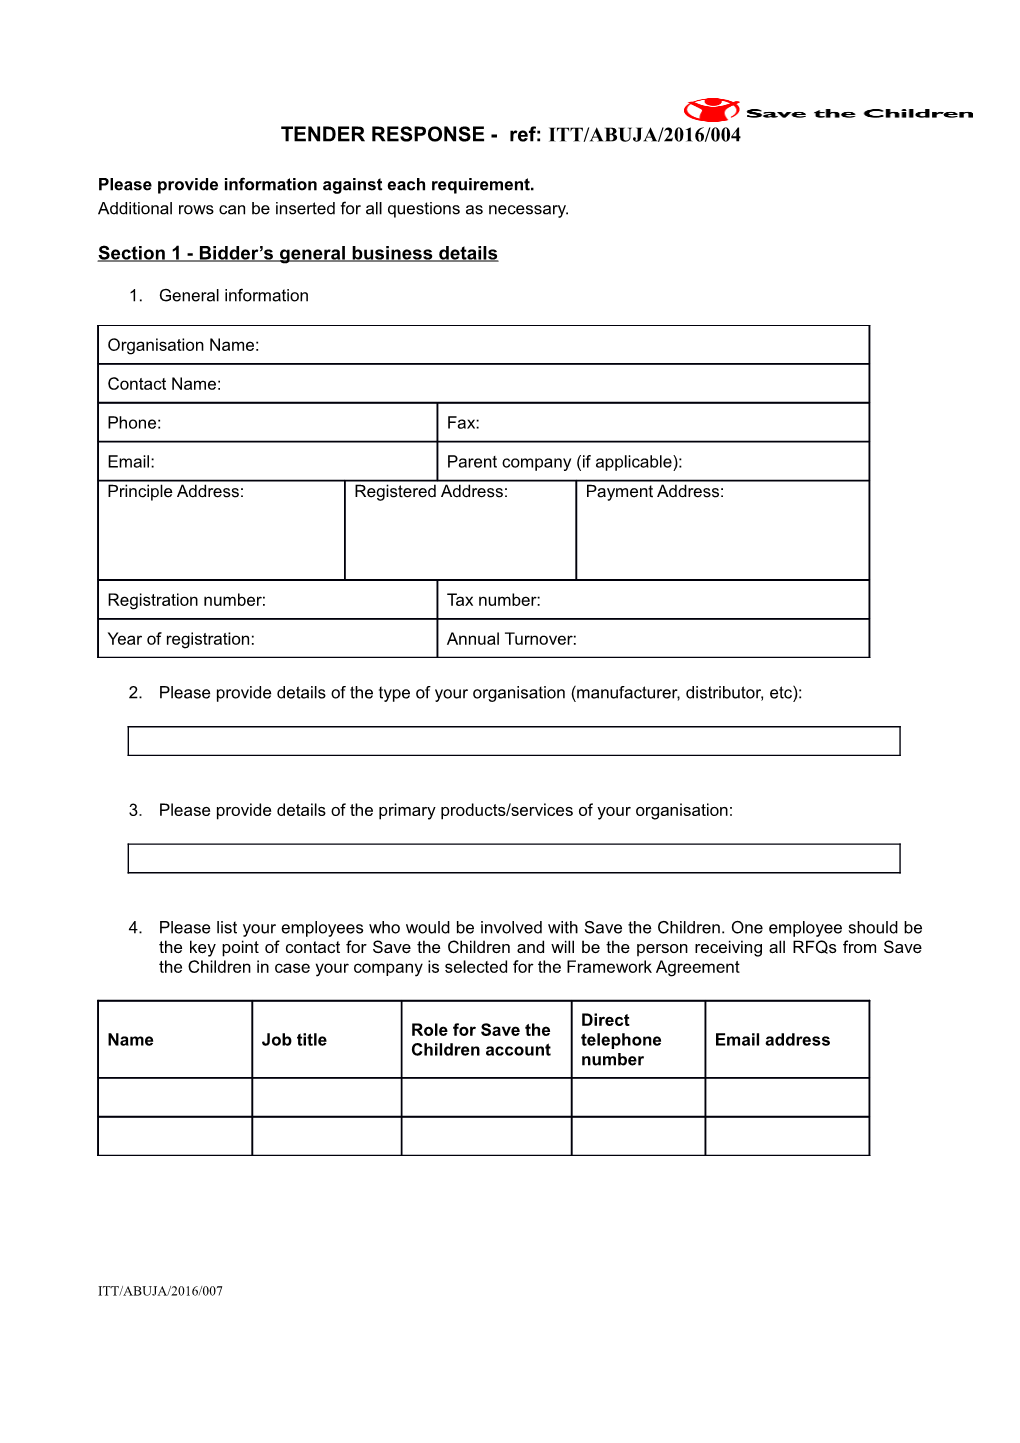 Section 1 - Bidder S General Business Details s1